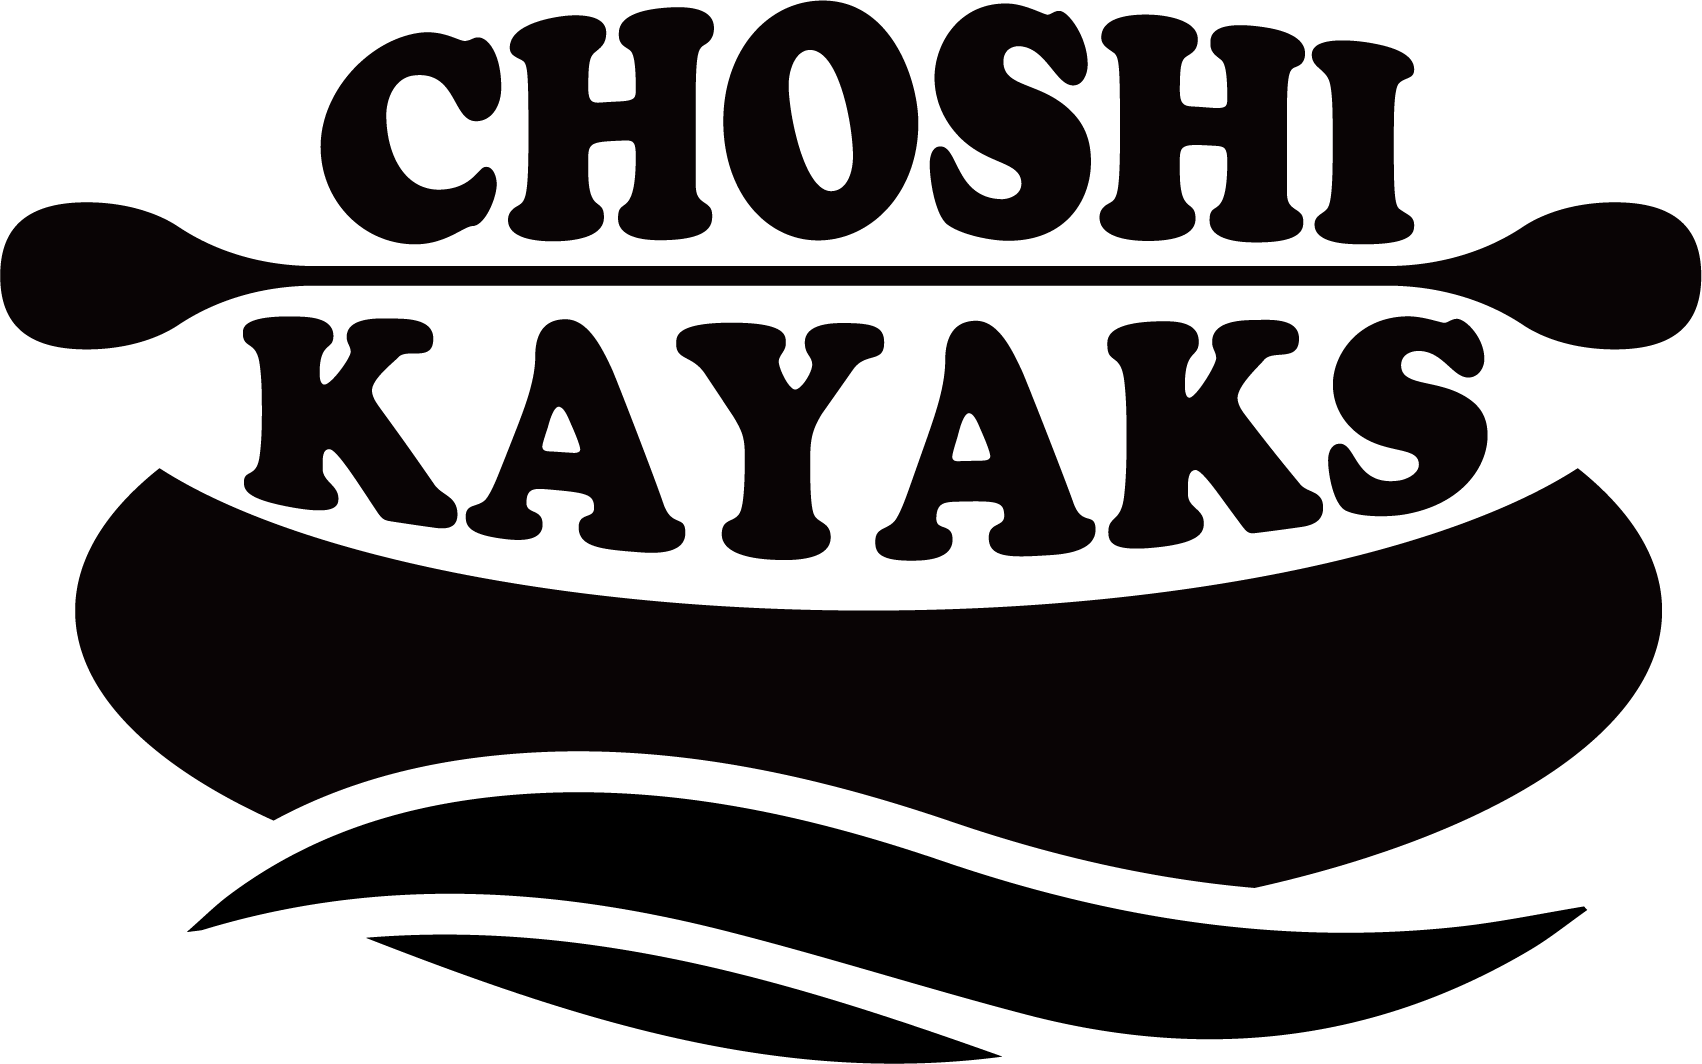 CHOSHI KAYAKS